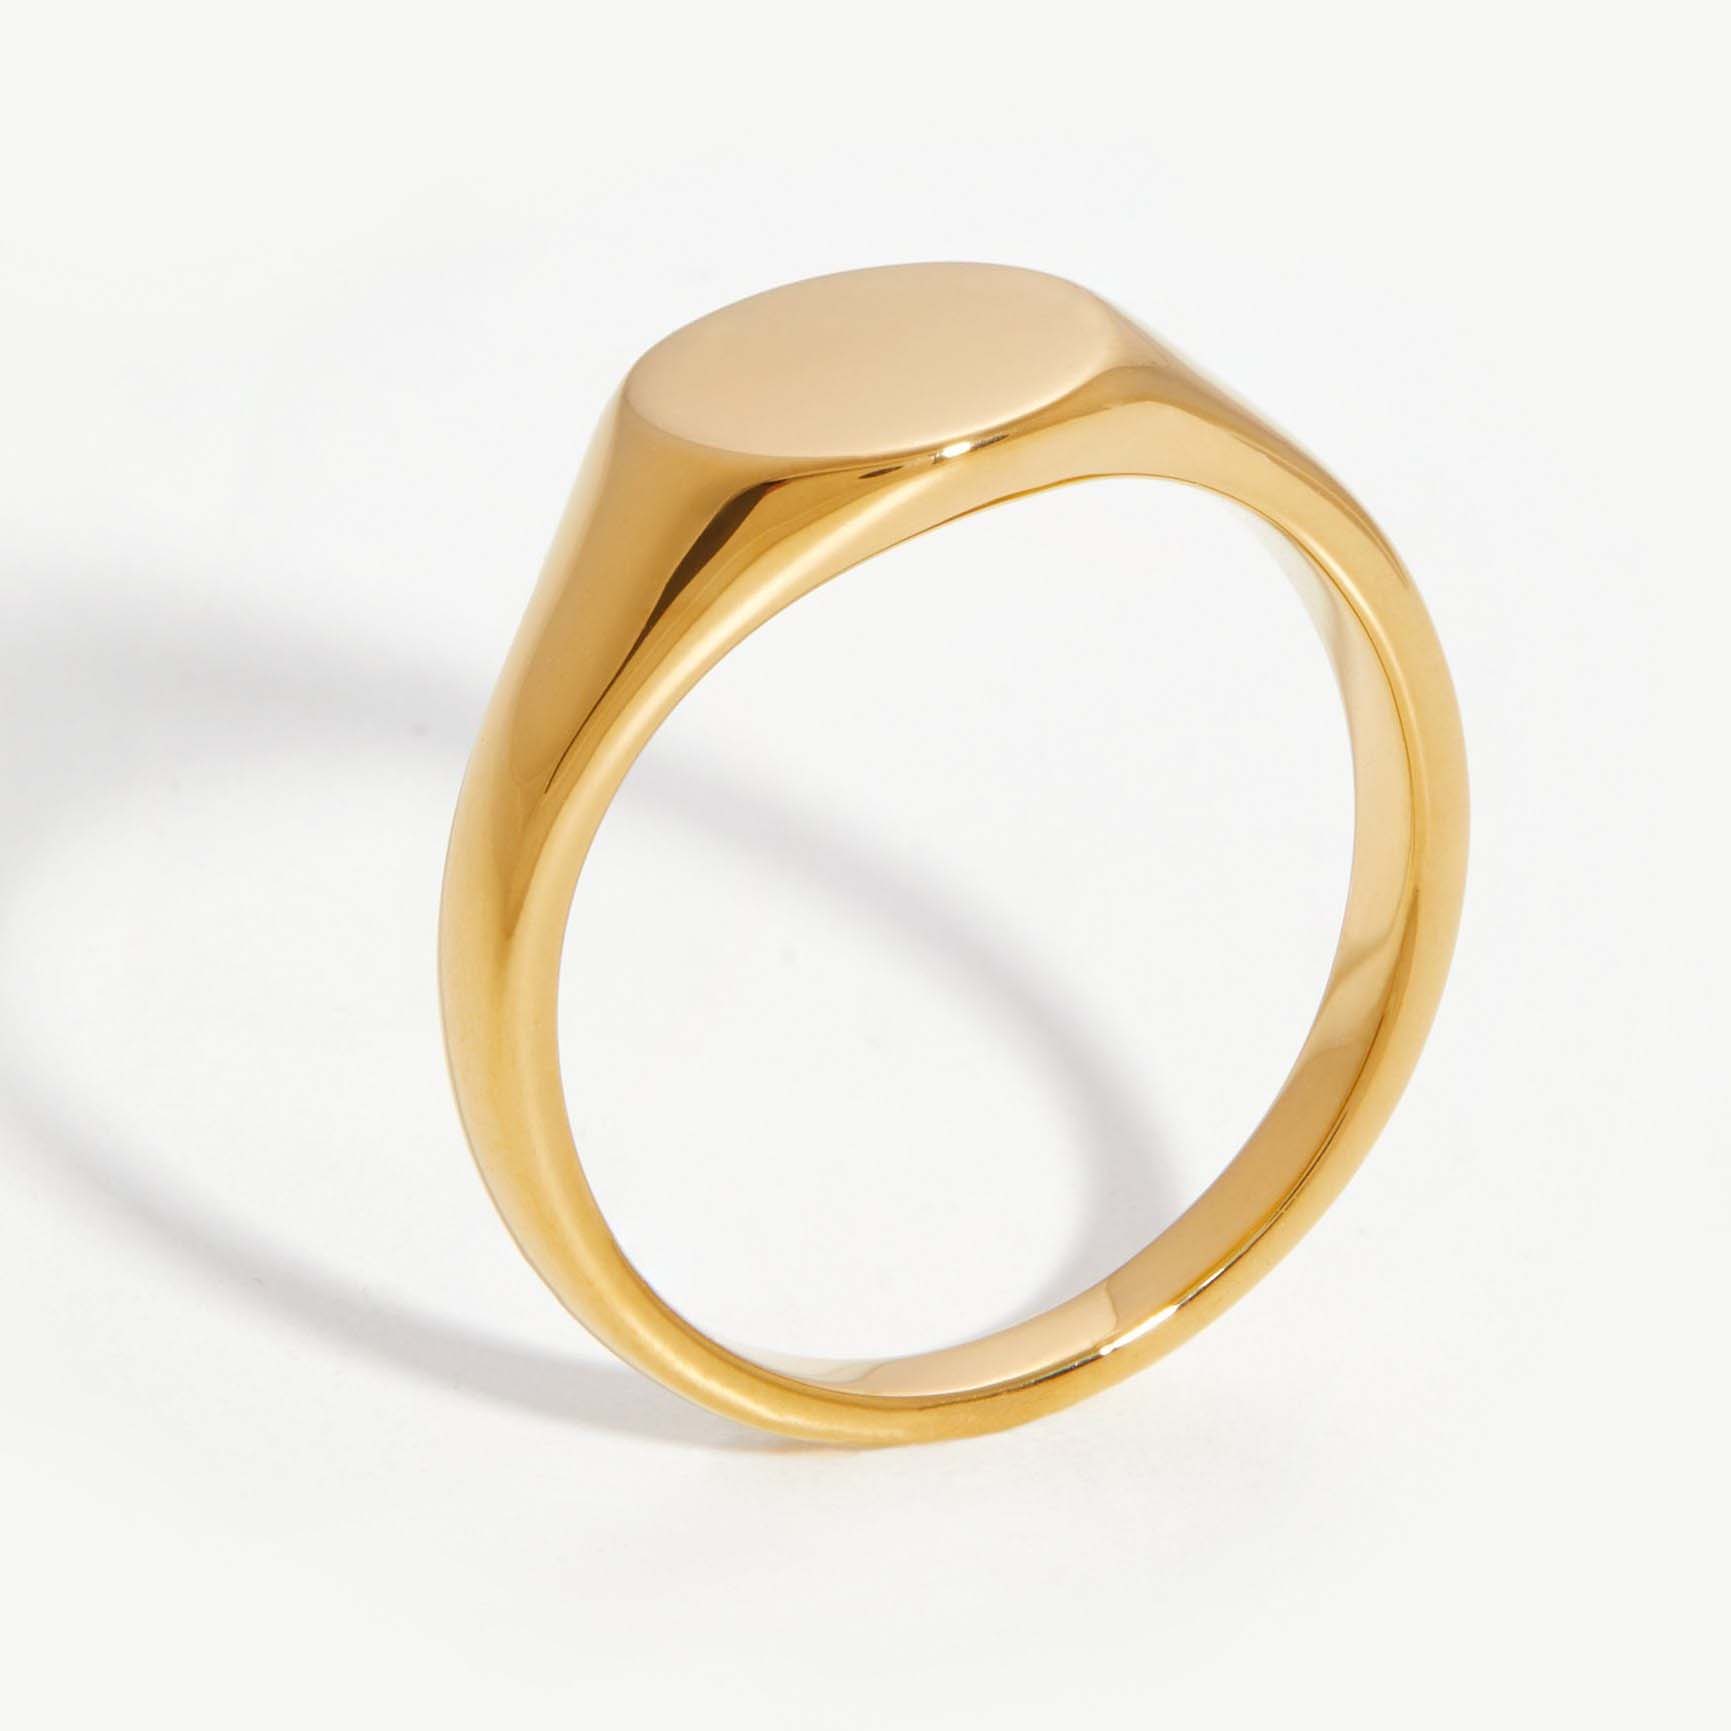 Производитель ювелирных изделий из позолоченного золота изготовил на заказ серебряное кольцо с покрытием из 18-каратного золота